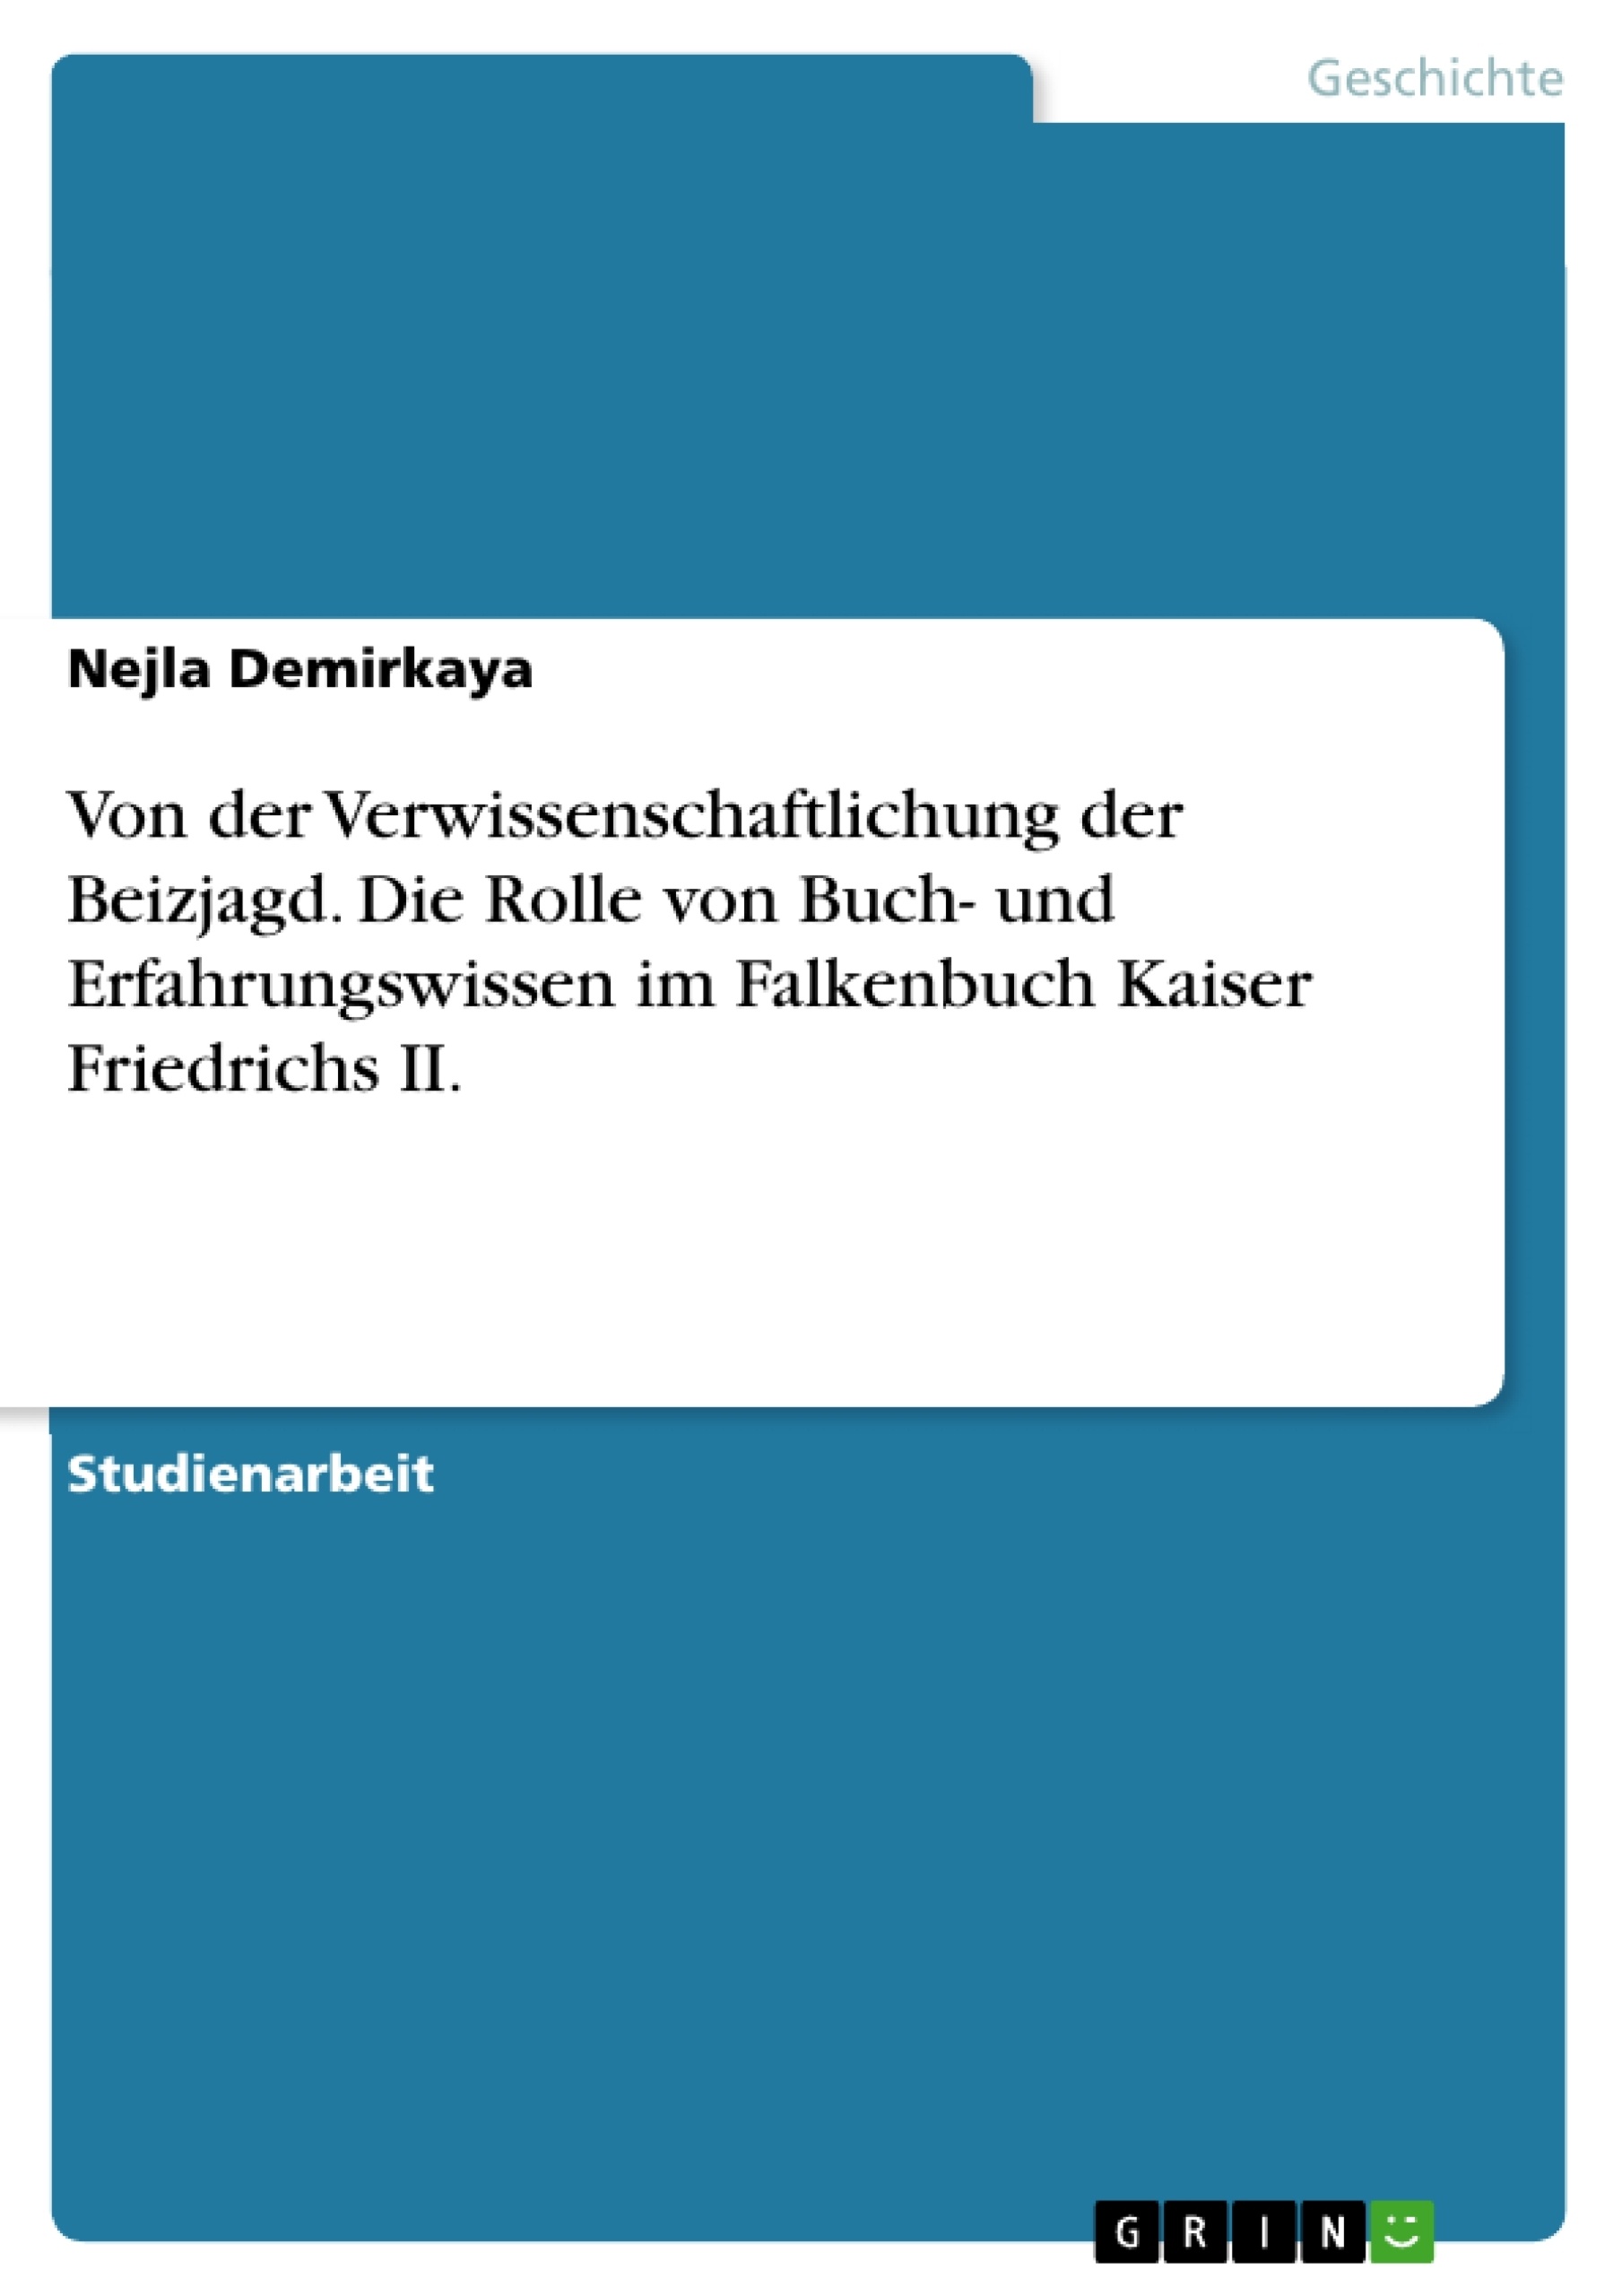 Titel: Von der Verwissenschaftlichung der Beizjagd. Die Rolle von Buch- und Erfahrungswissen im Falkenbuch Kaiser Friedrichs II.